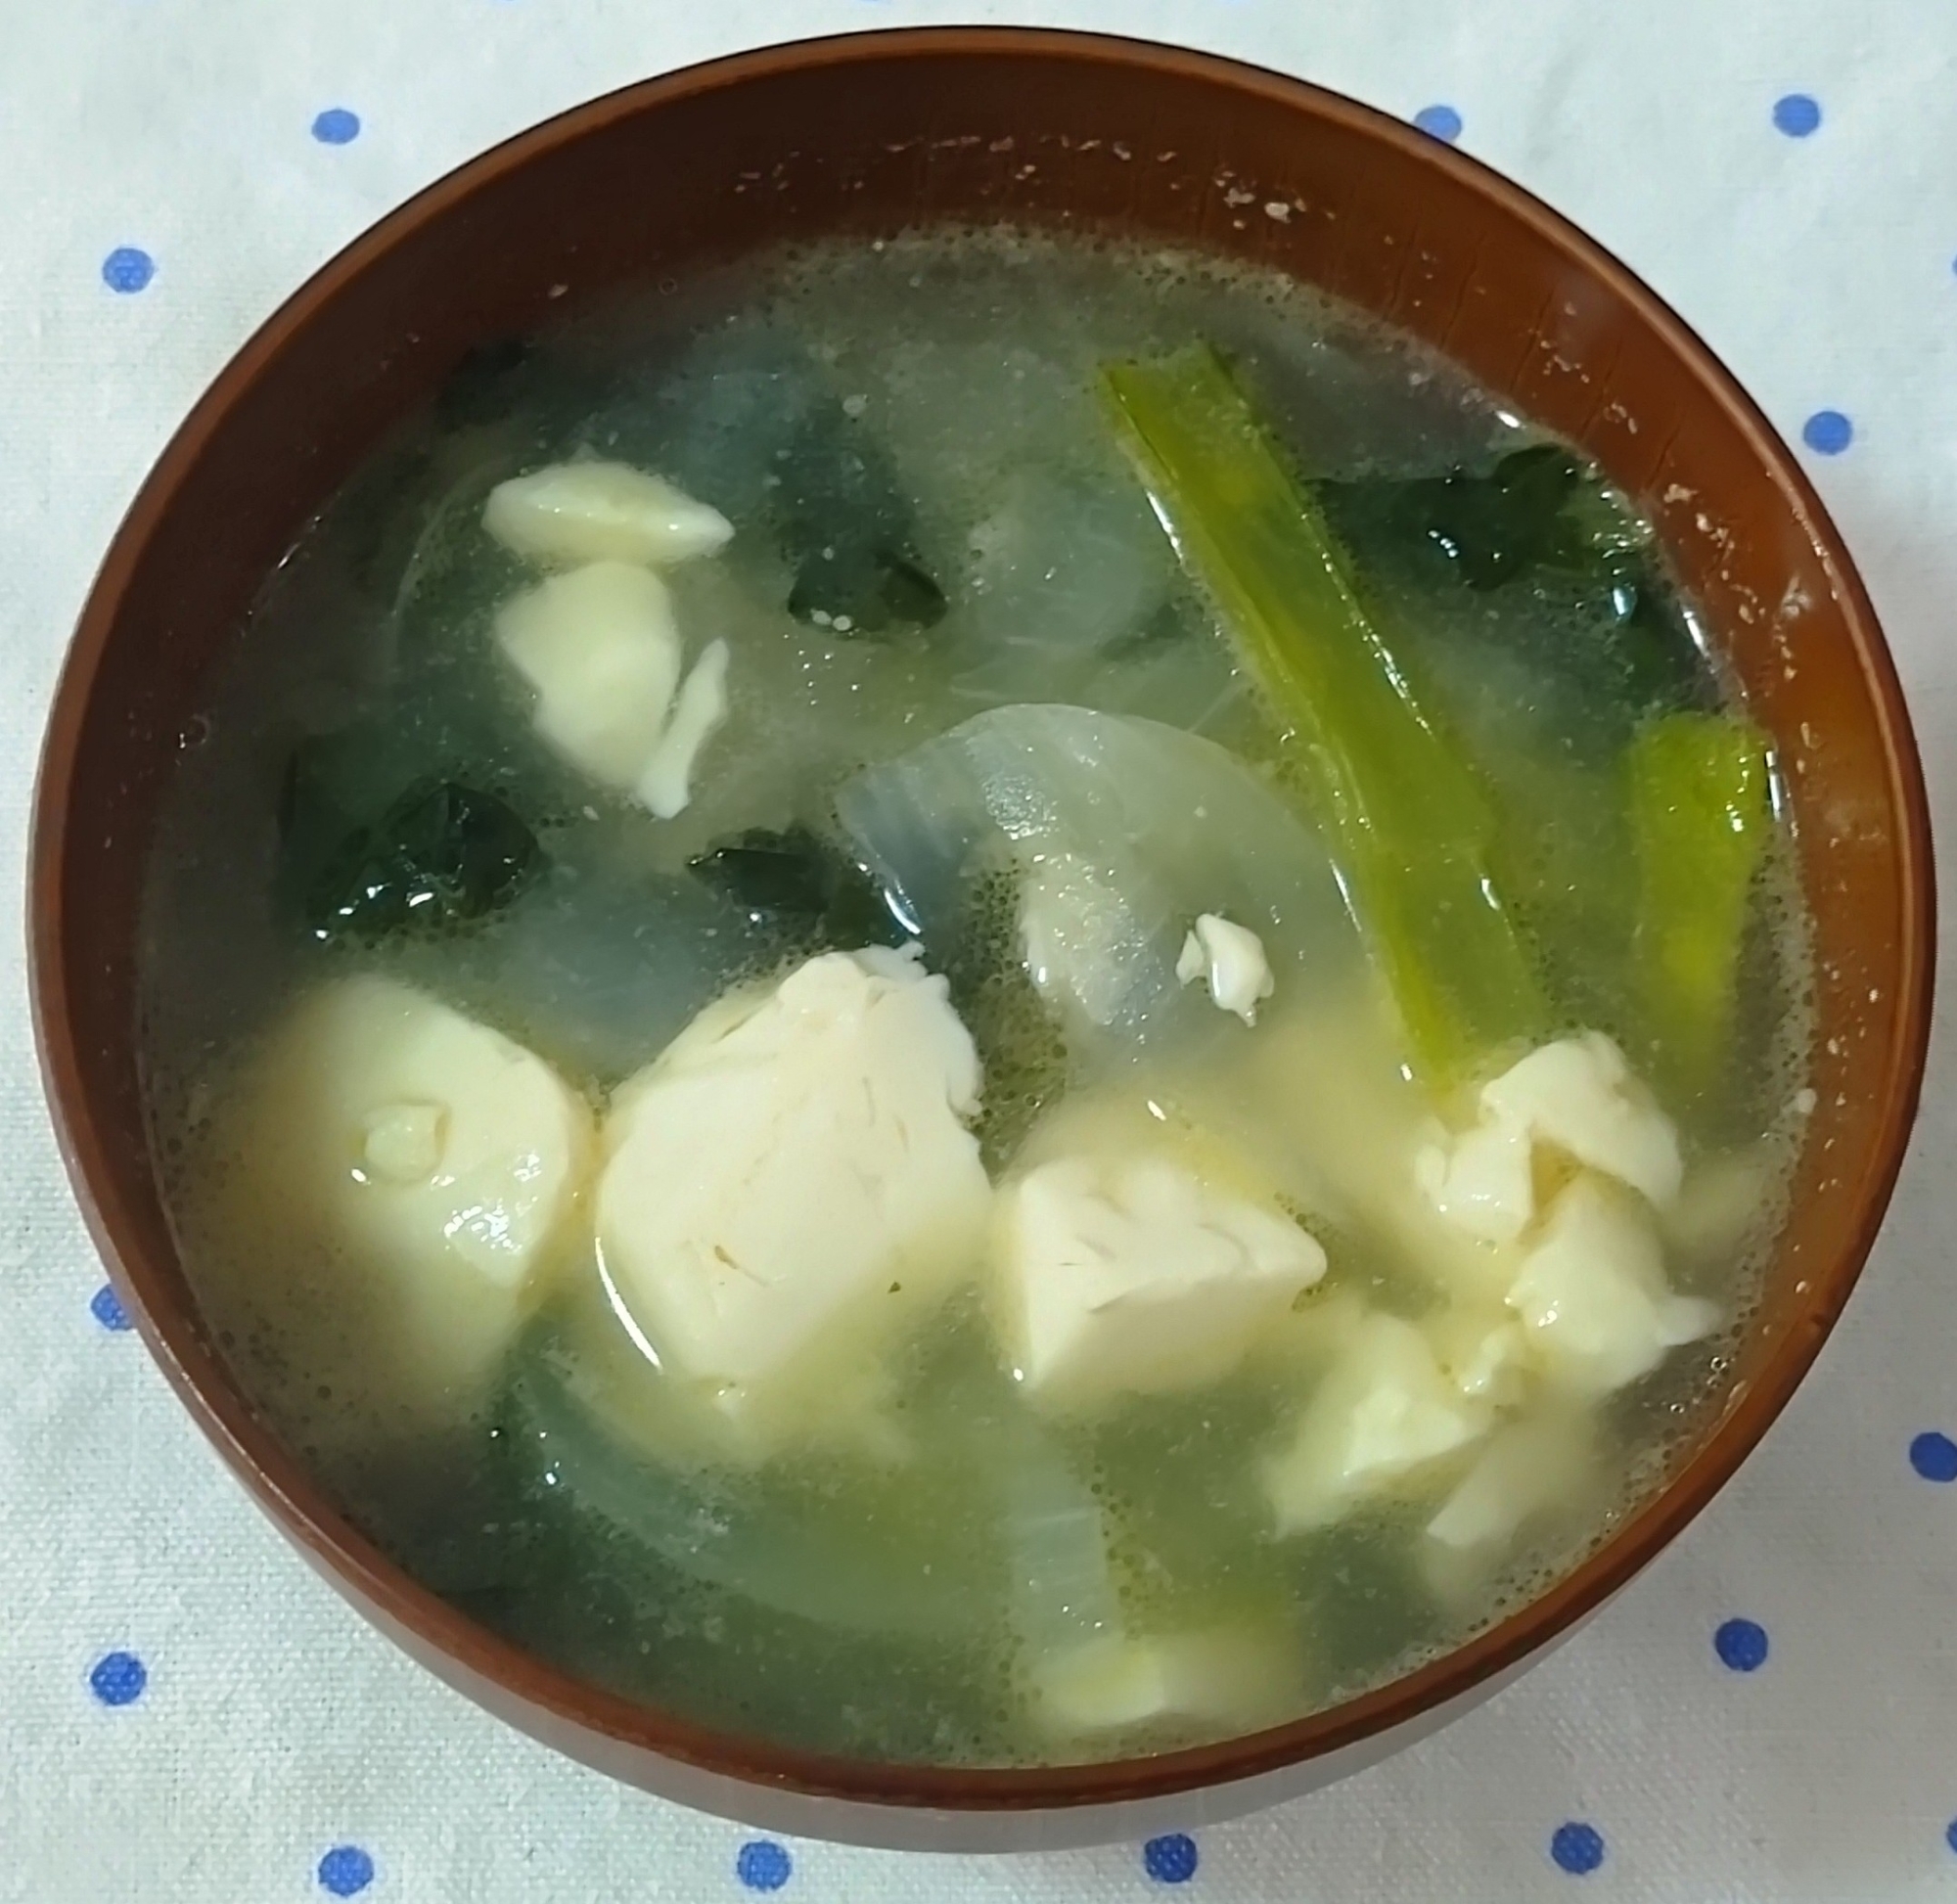 小松菜と豆腐と玉ねぎのあっさりスープ